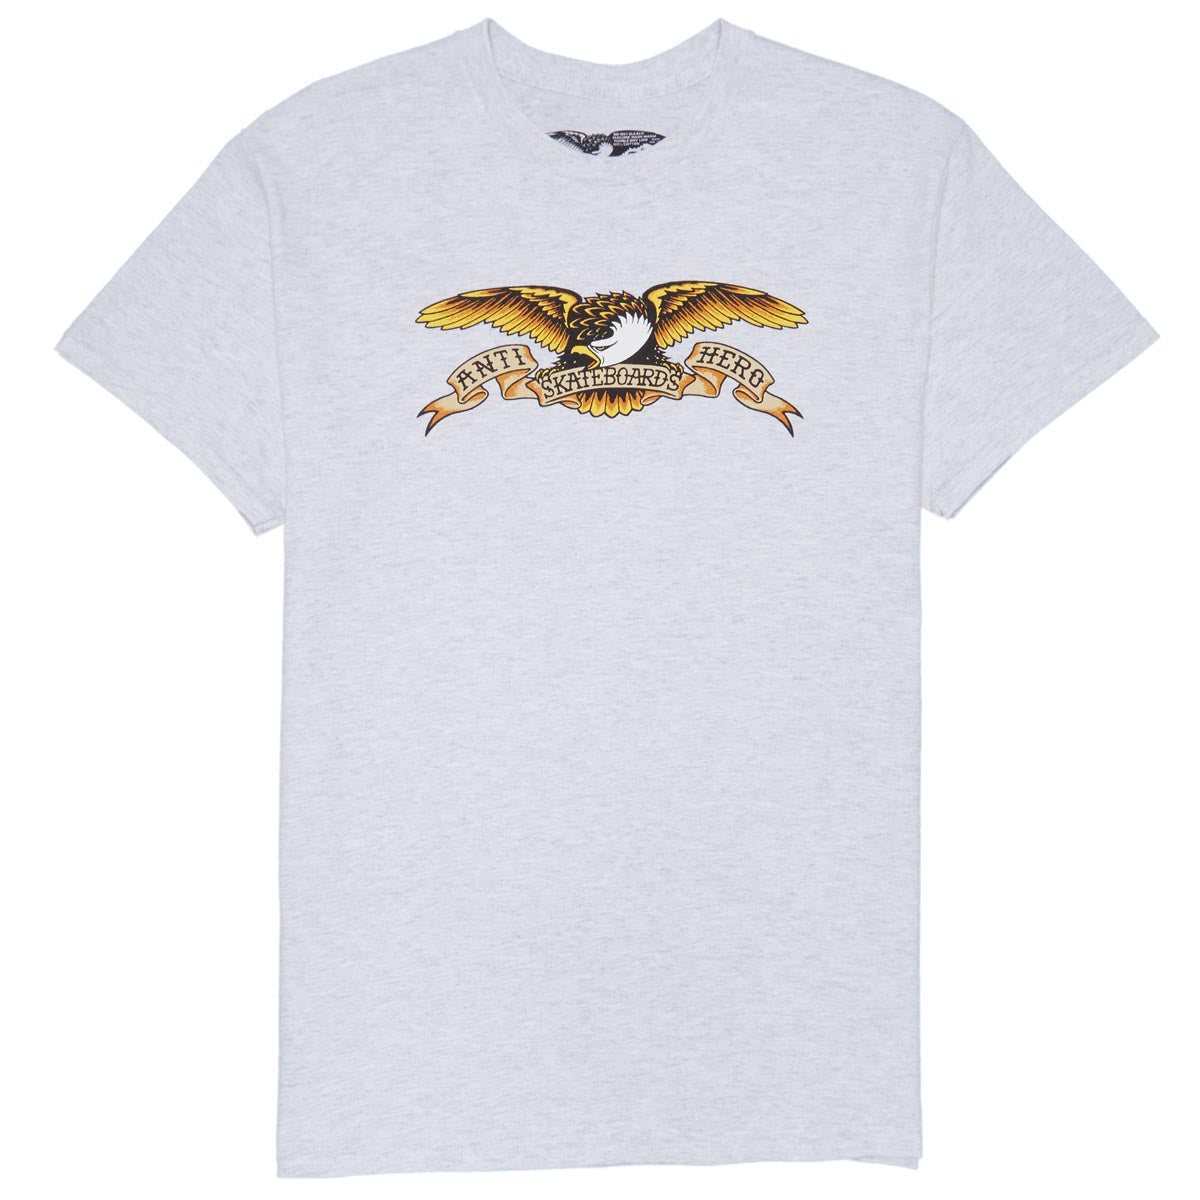 Anti-Hero Eagle T-Shirt - Ash/Black Multi Color image 1